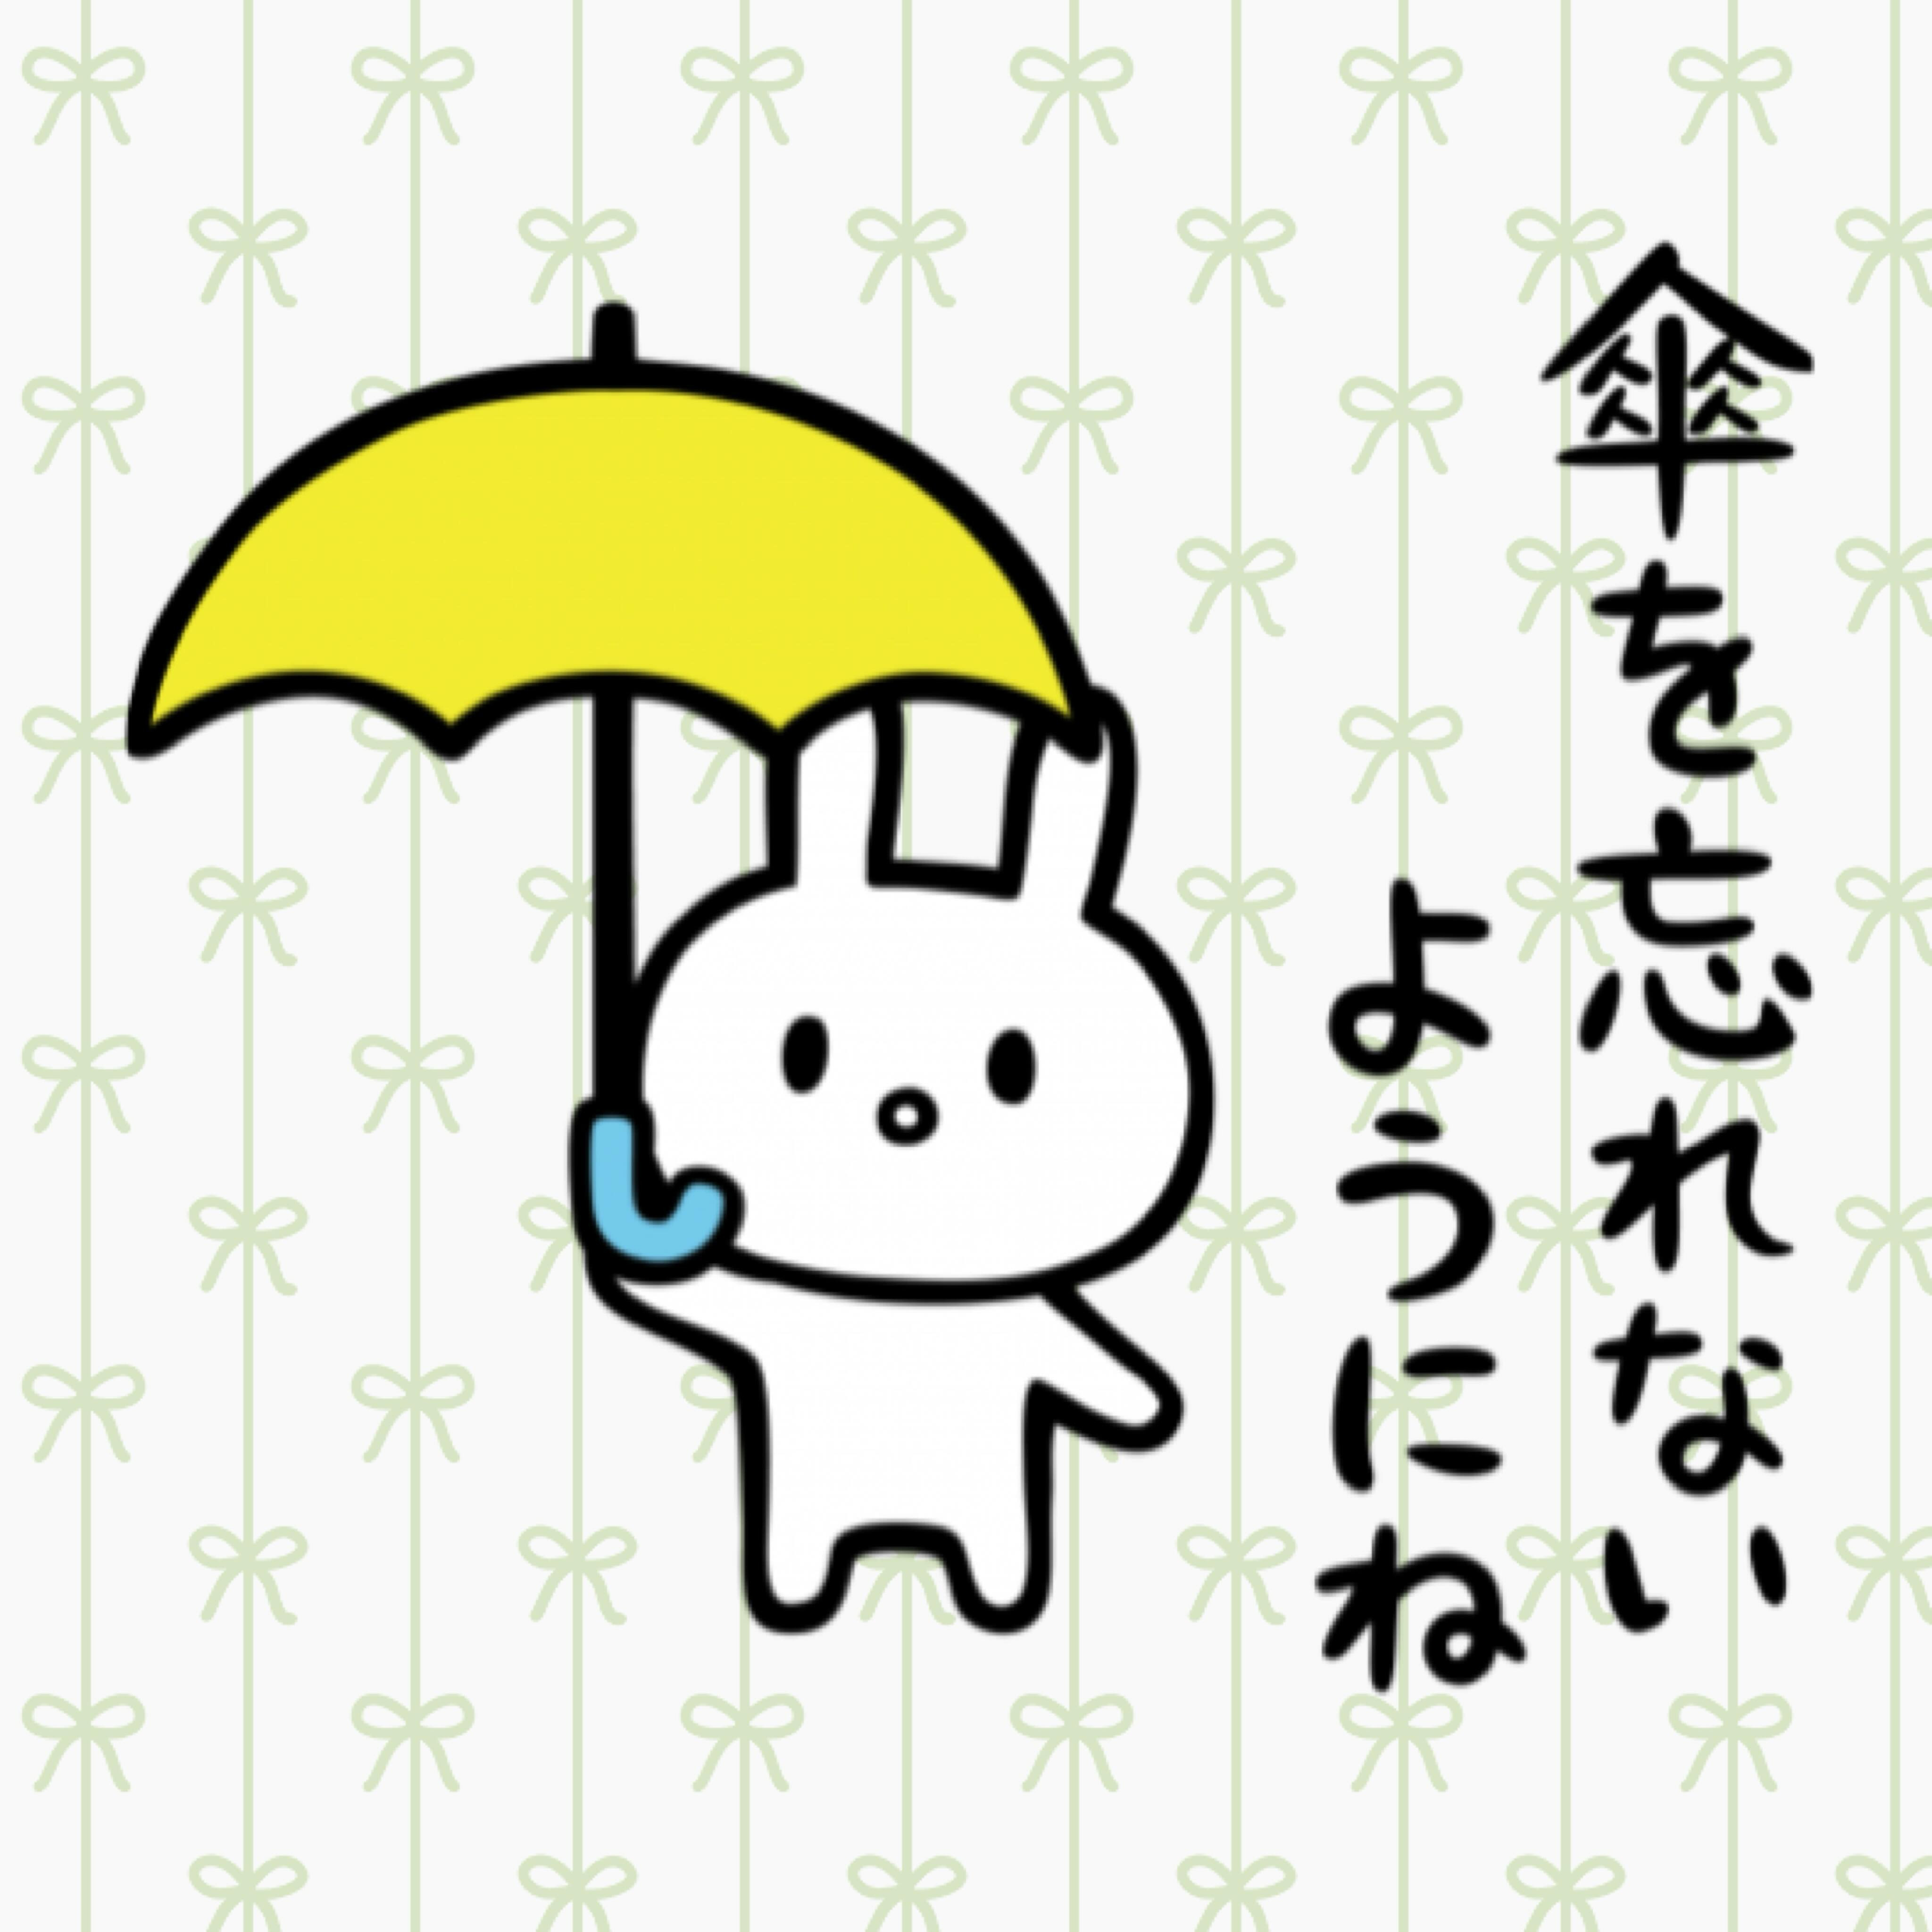 ☂️傘の忘れ物についてのお願い☂️